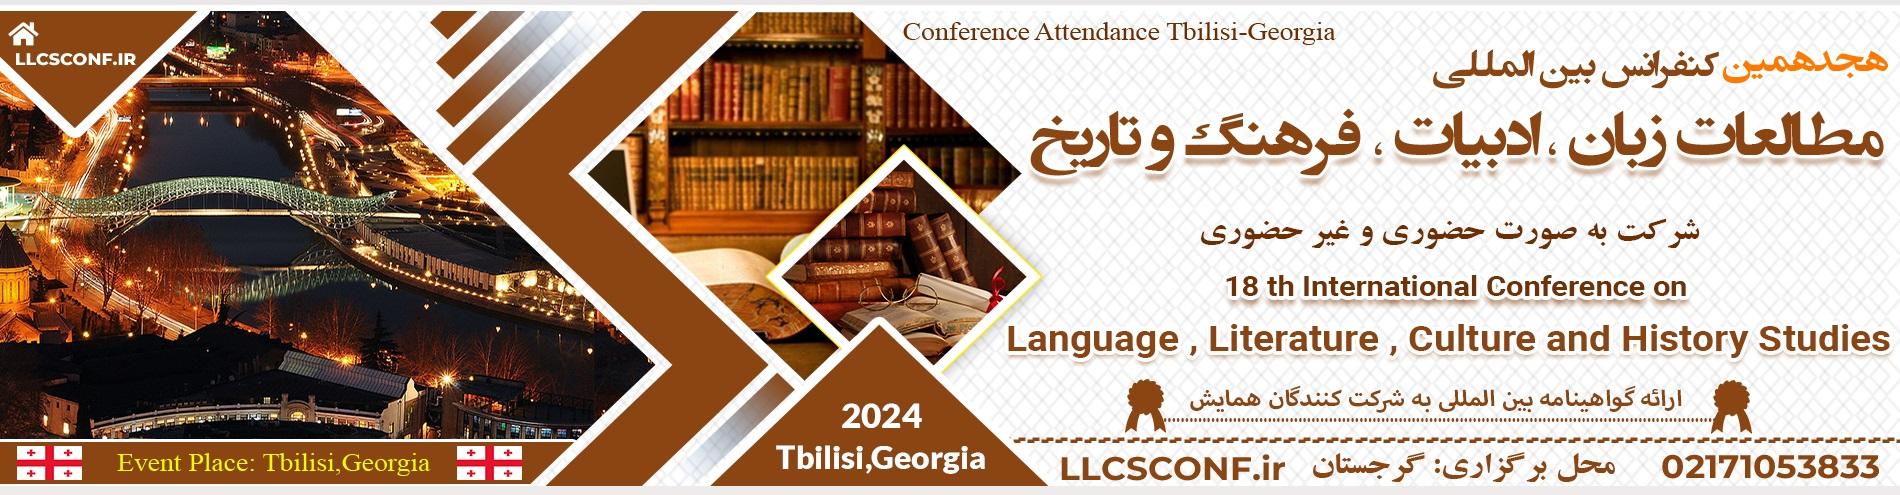 کنفرانس بین المللی مطالعات زبان ،ادبیات، فرهنگ و تاریخ	